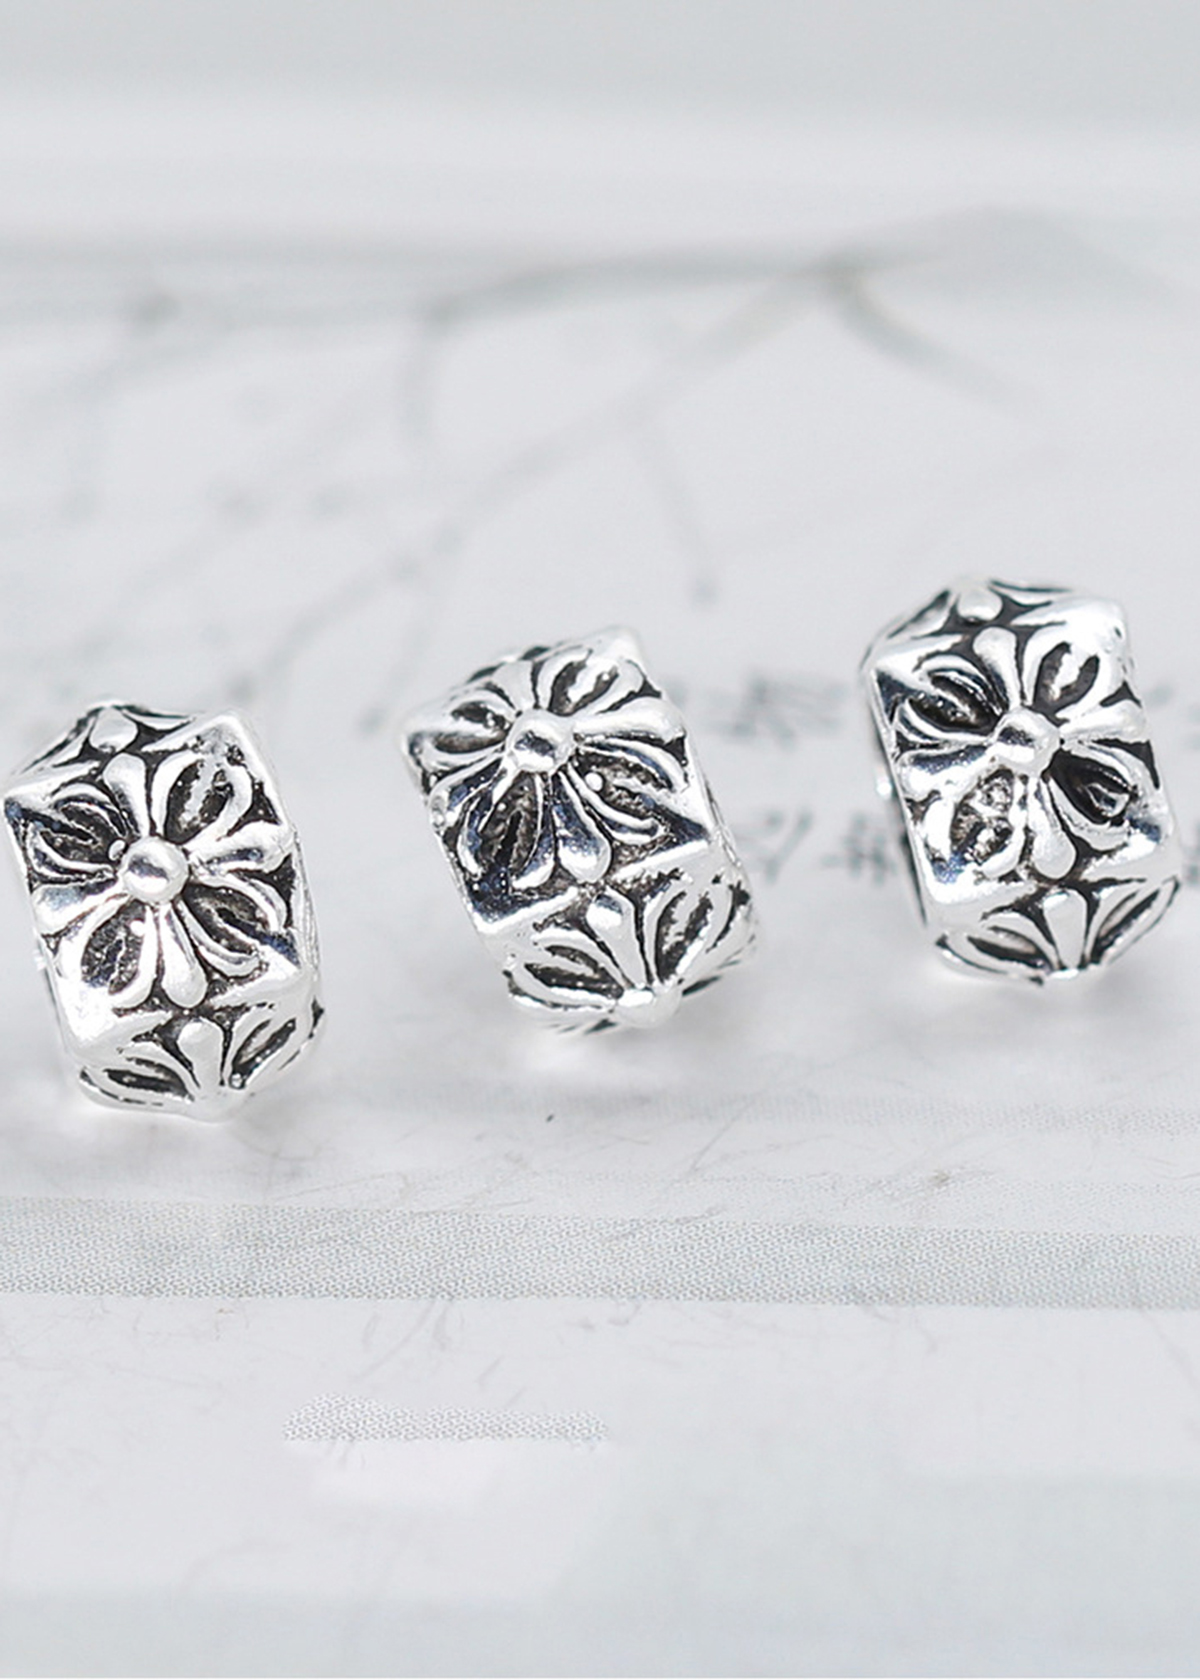 Combo 3 cái charm bạc chặn hạt họa tiết hoa văn - Ngọc Quý Gemstones